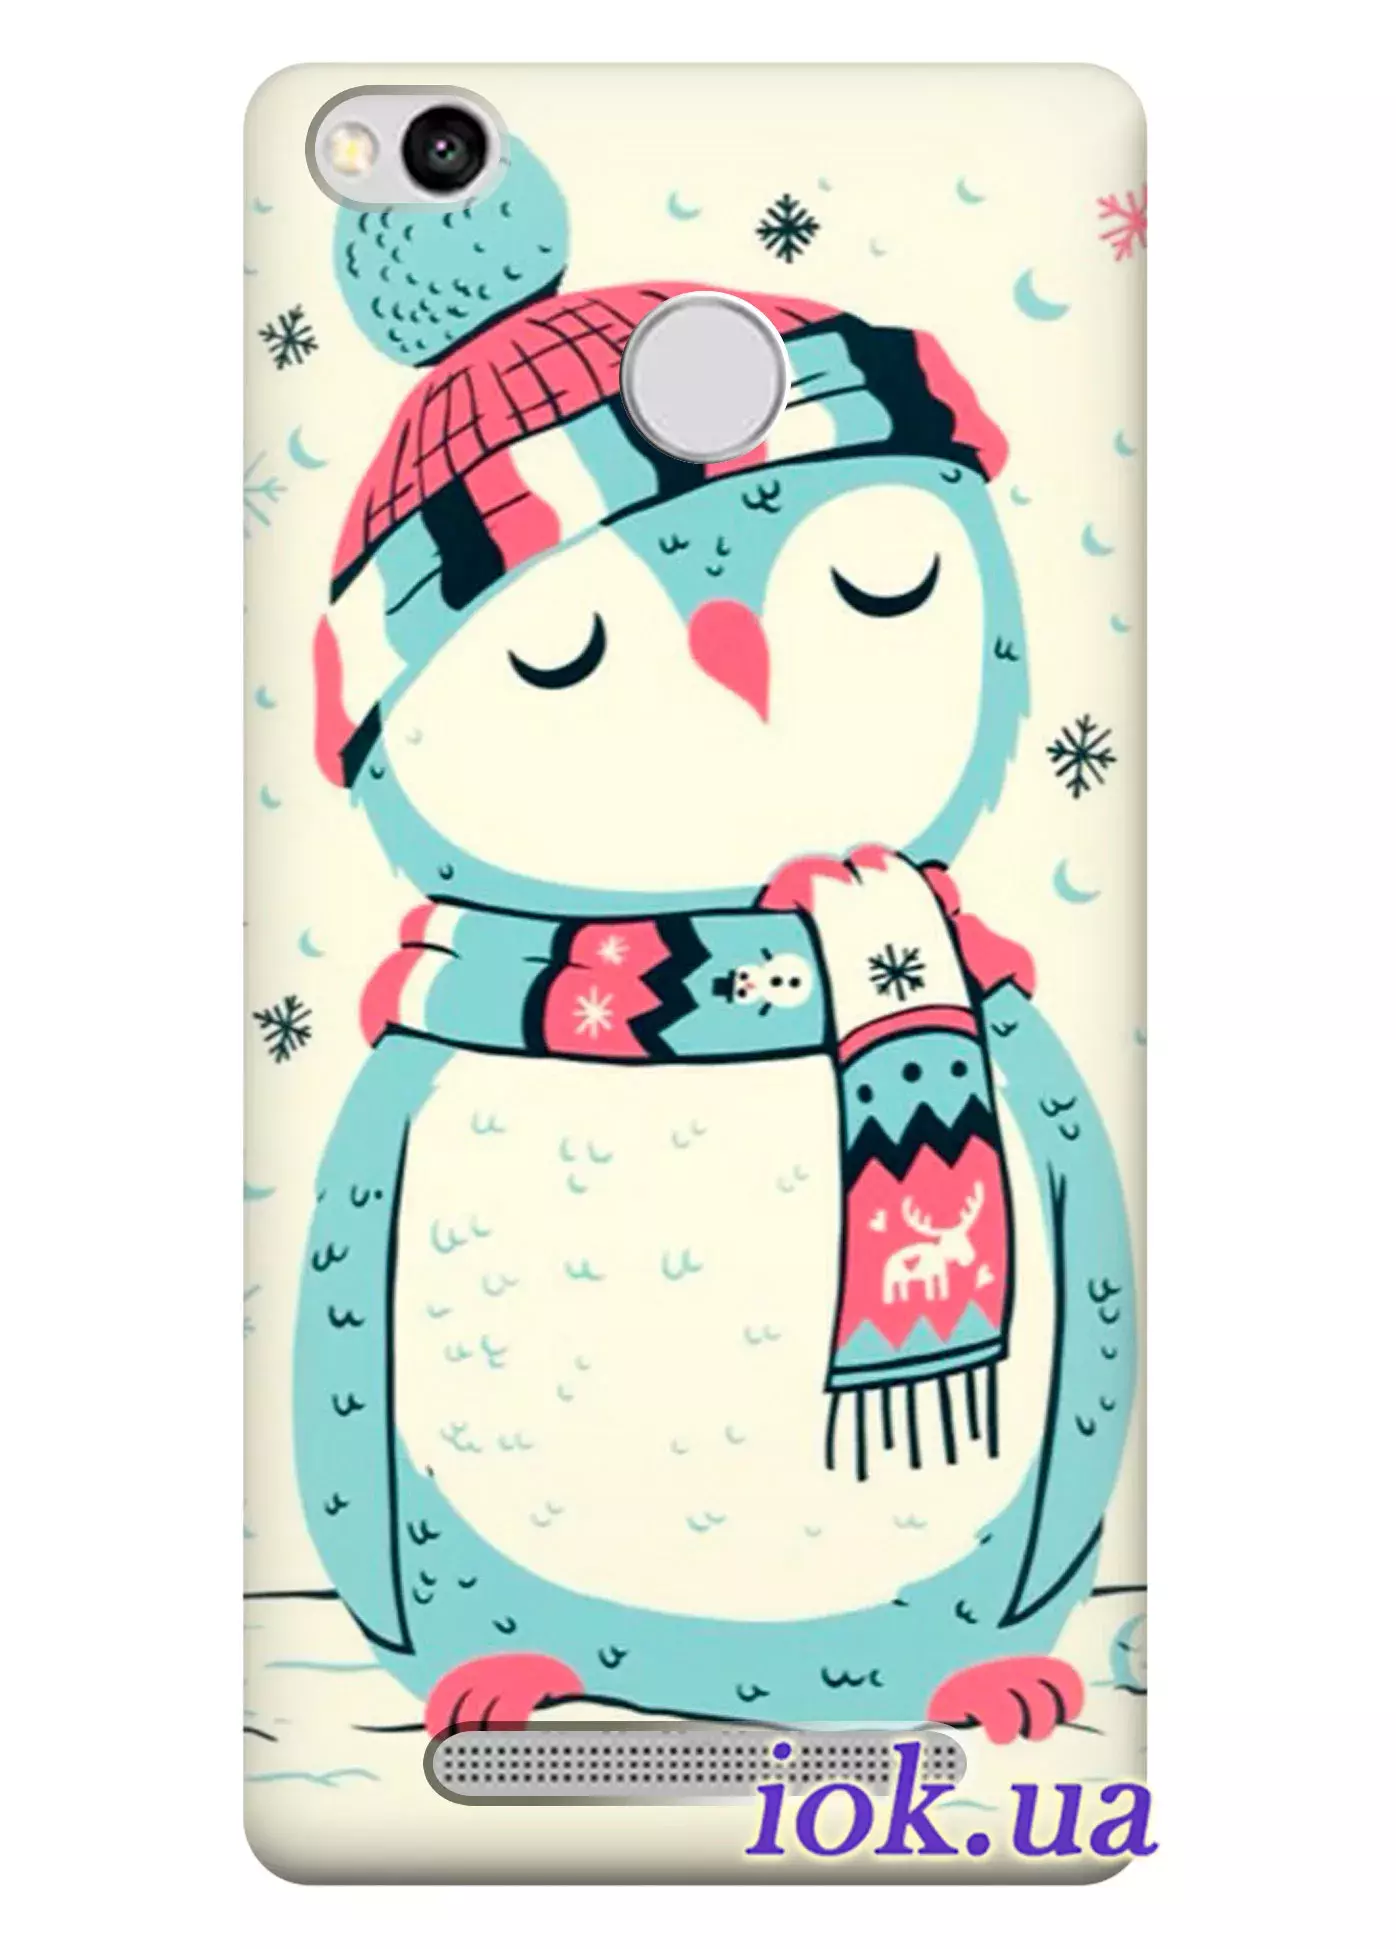 Чехол для Xiaomi Redmi 3S - Милый пингвин